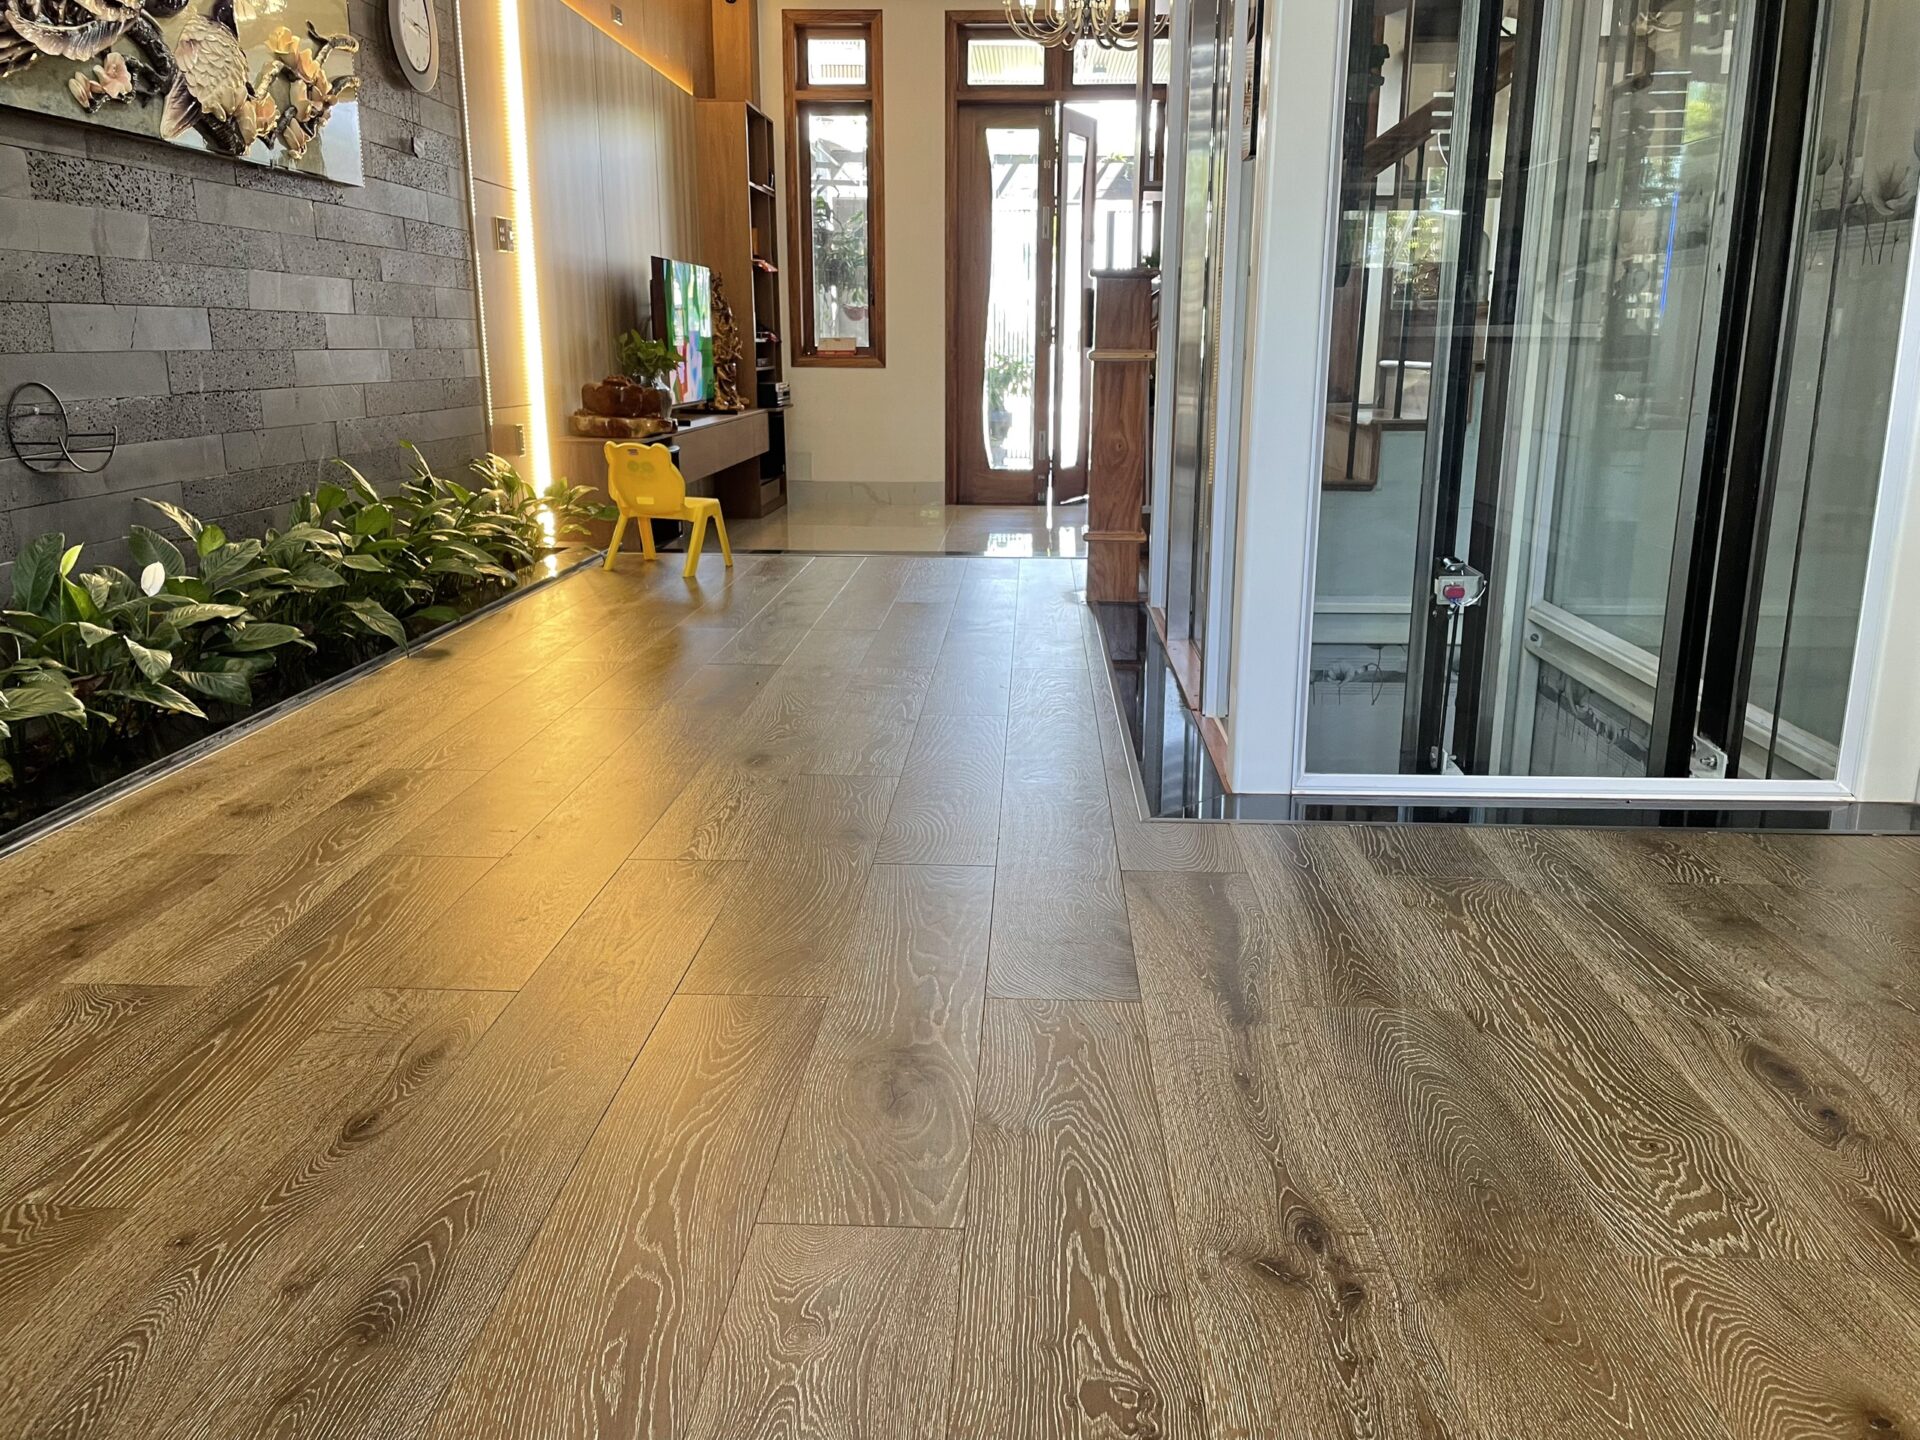 Sàn gỗ tự nhiên hoàn thiện với độ sắc nét và tỉ mỉ cao